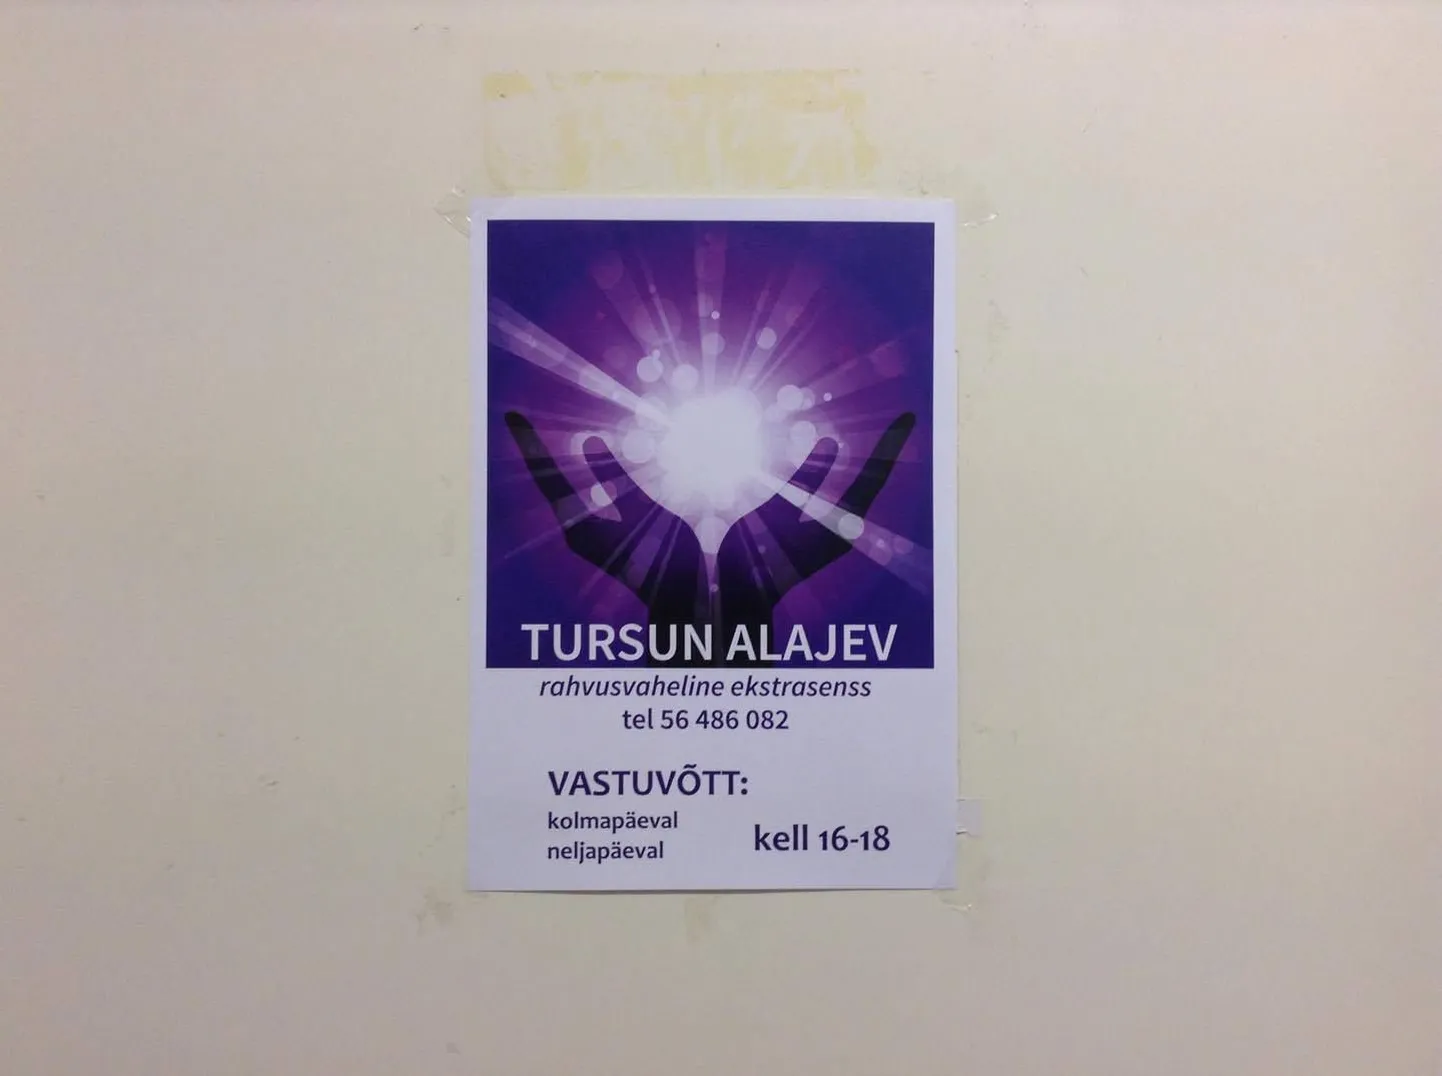 Такое вот объявление обнаружила наша читательница на двери одного из кабинетов Пельгулиннаской поликлиники в Таллинне.